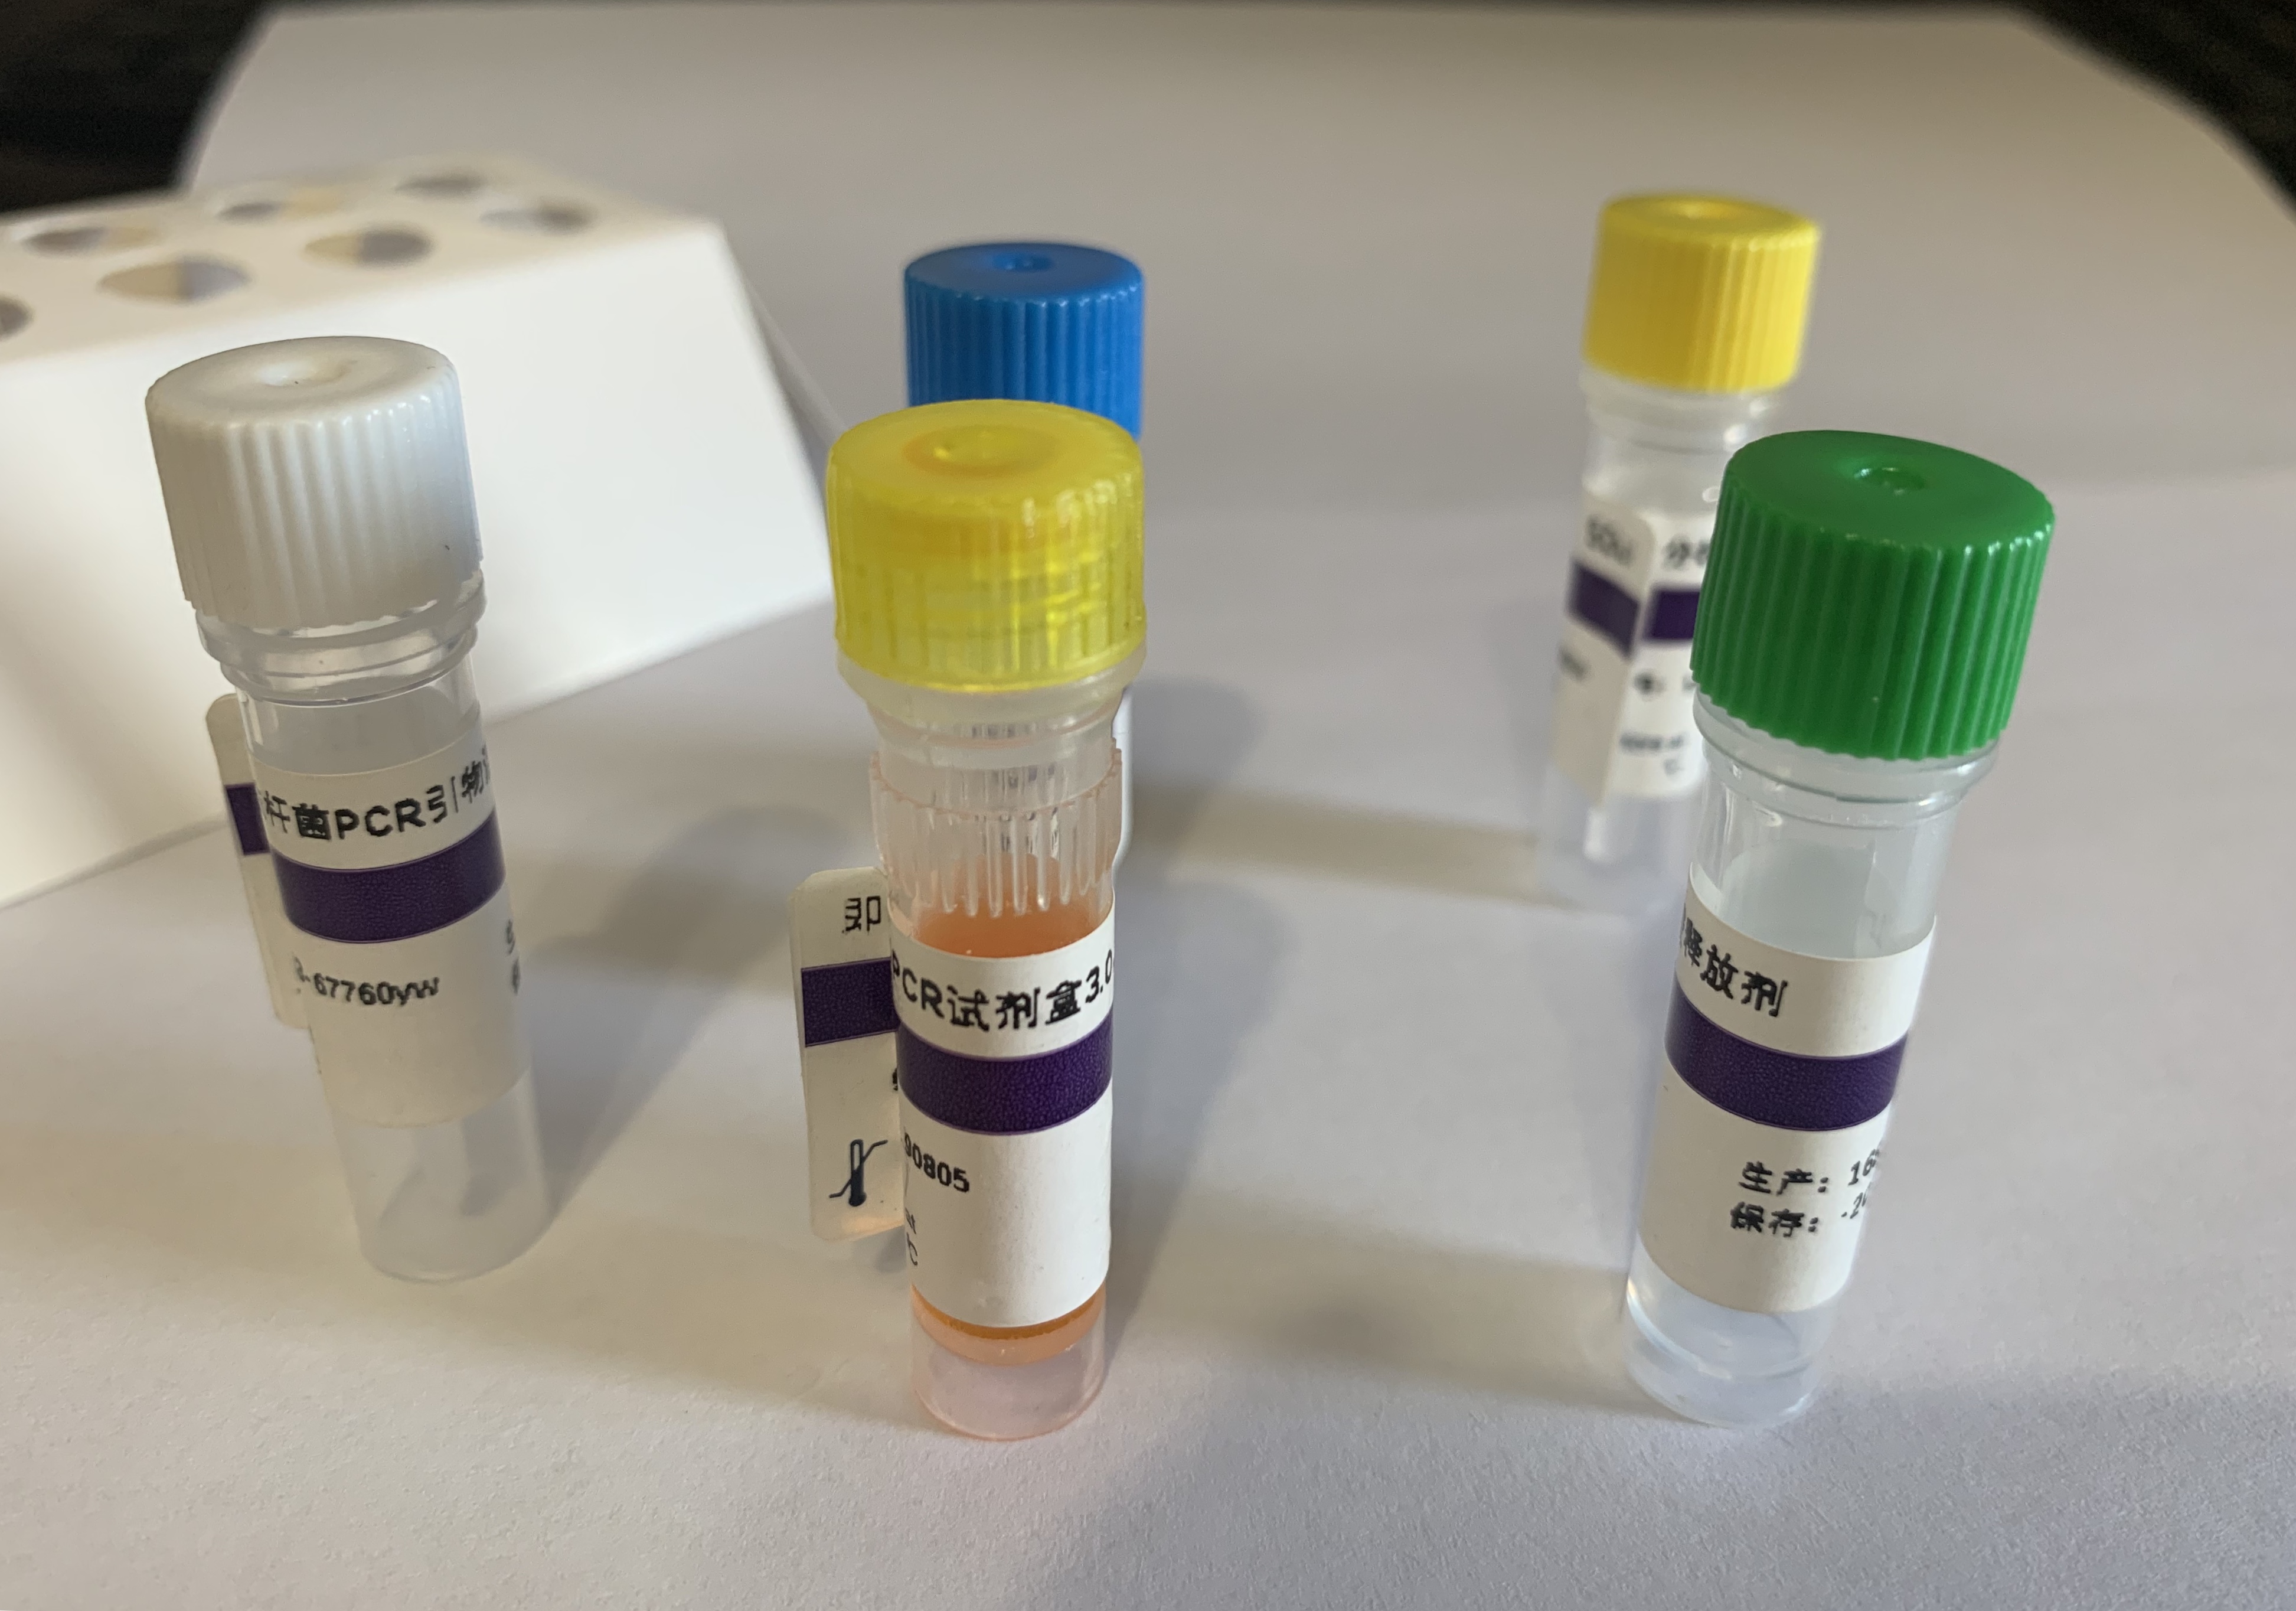 登革病毒2型染料法荧光定量RT-PCR试剂盒